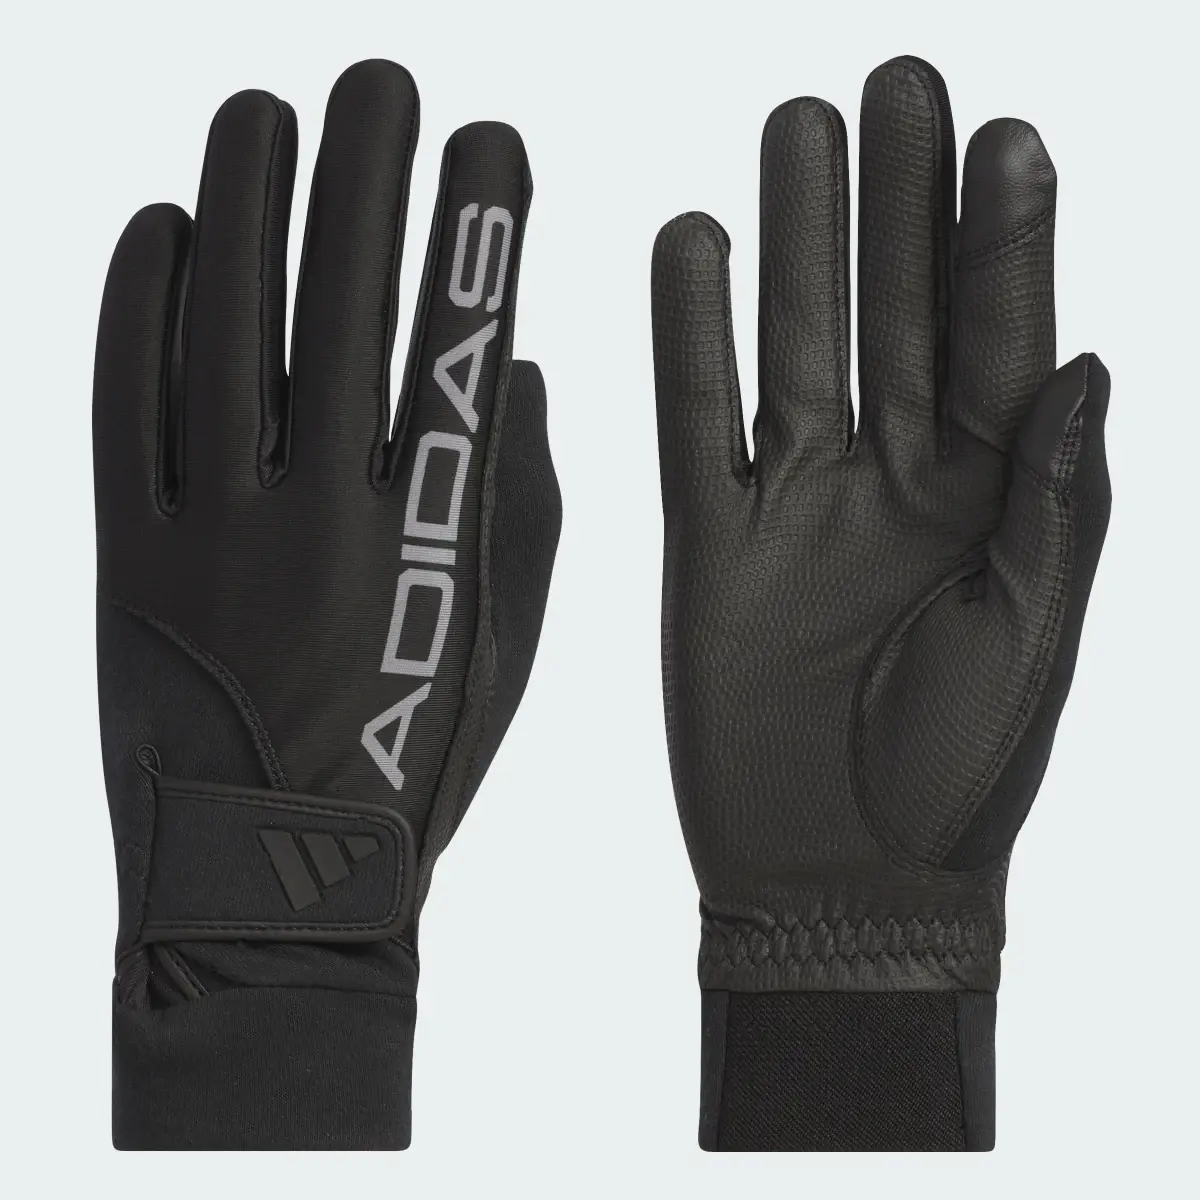 Adidas Warm Grip Comfort Gloves. 1